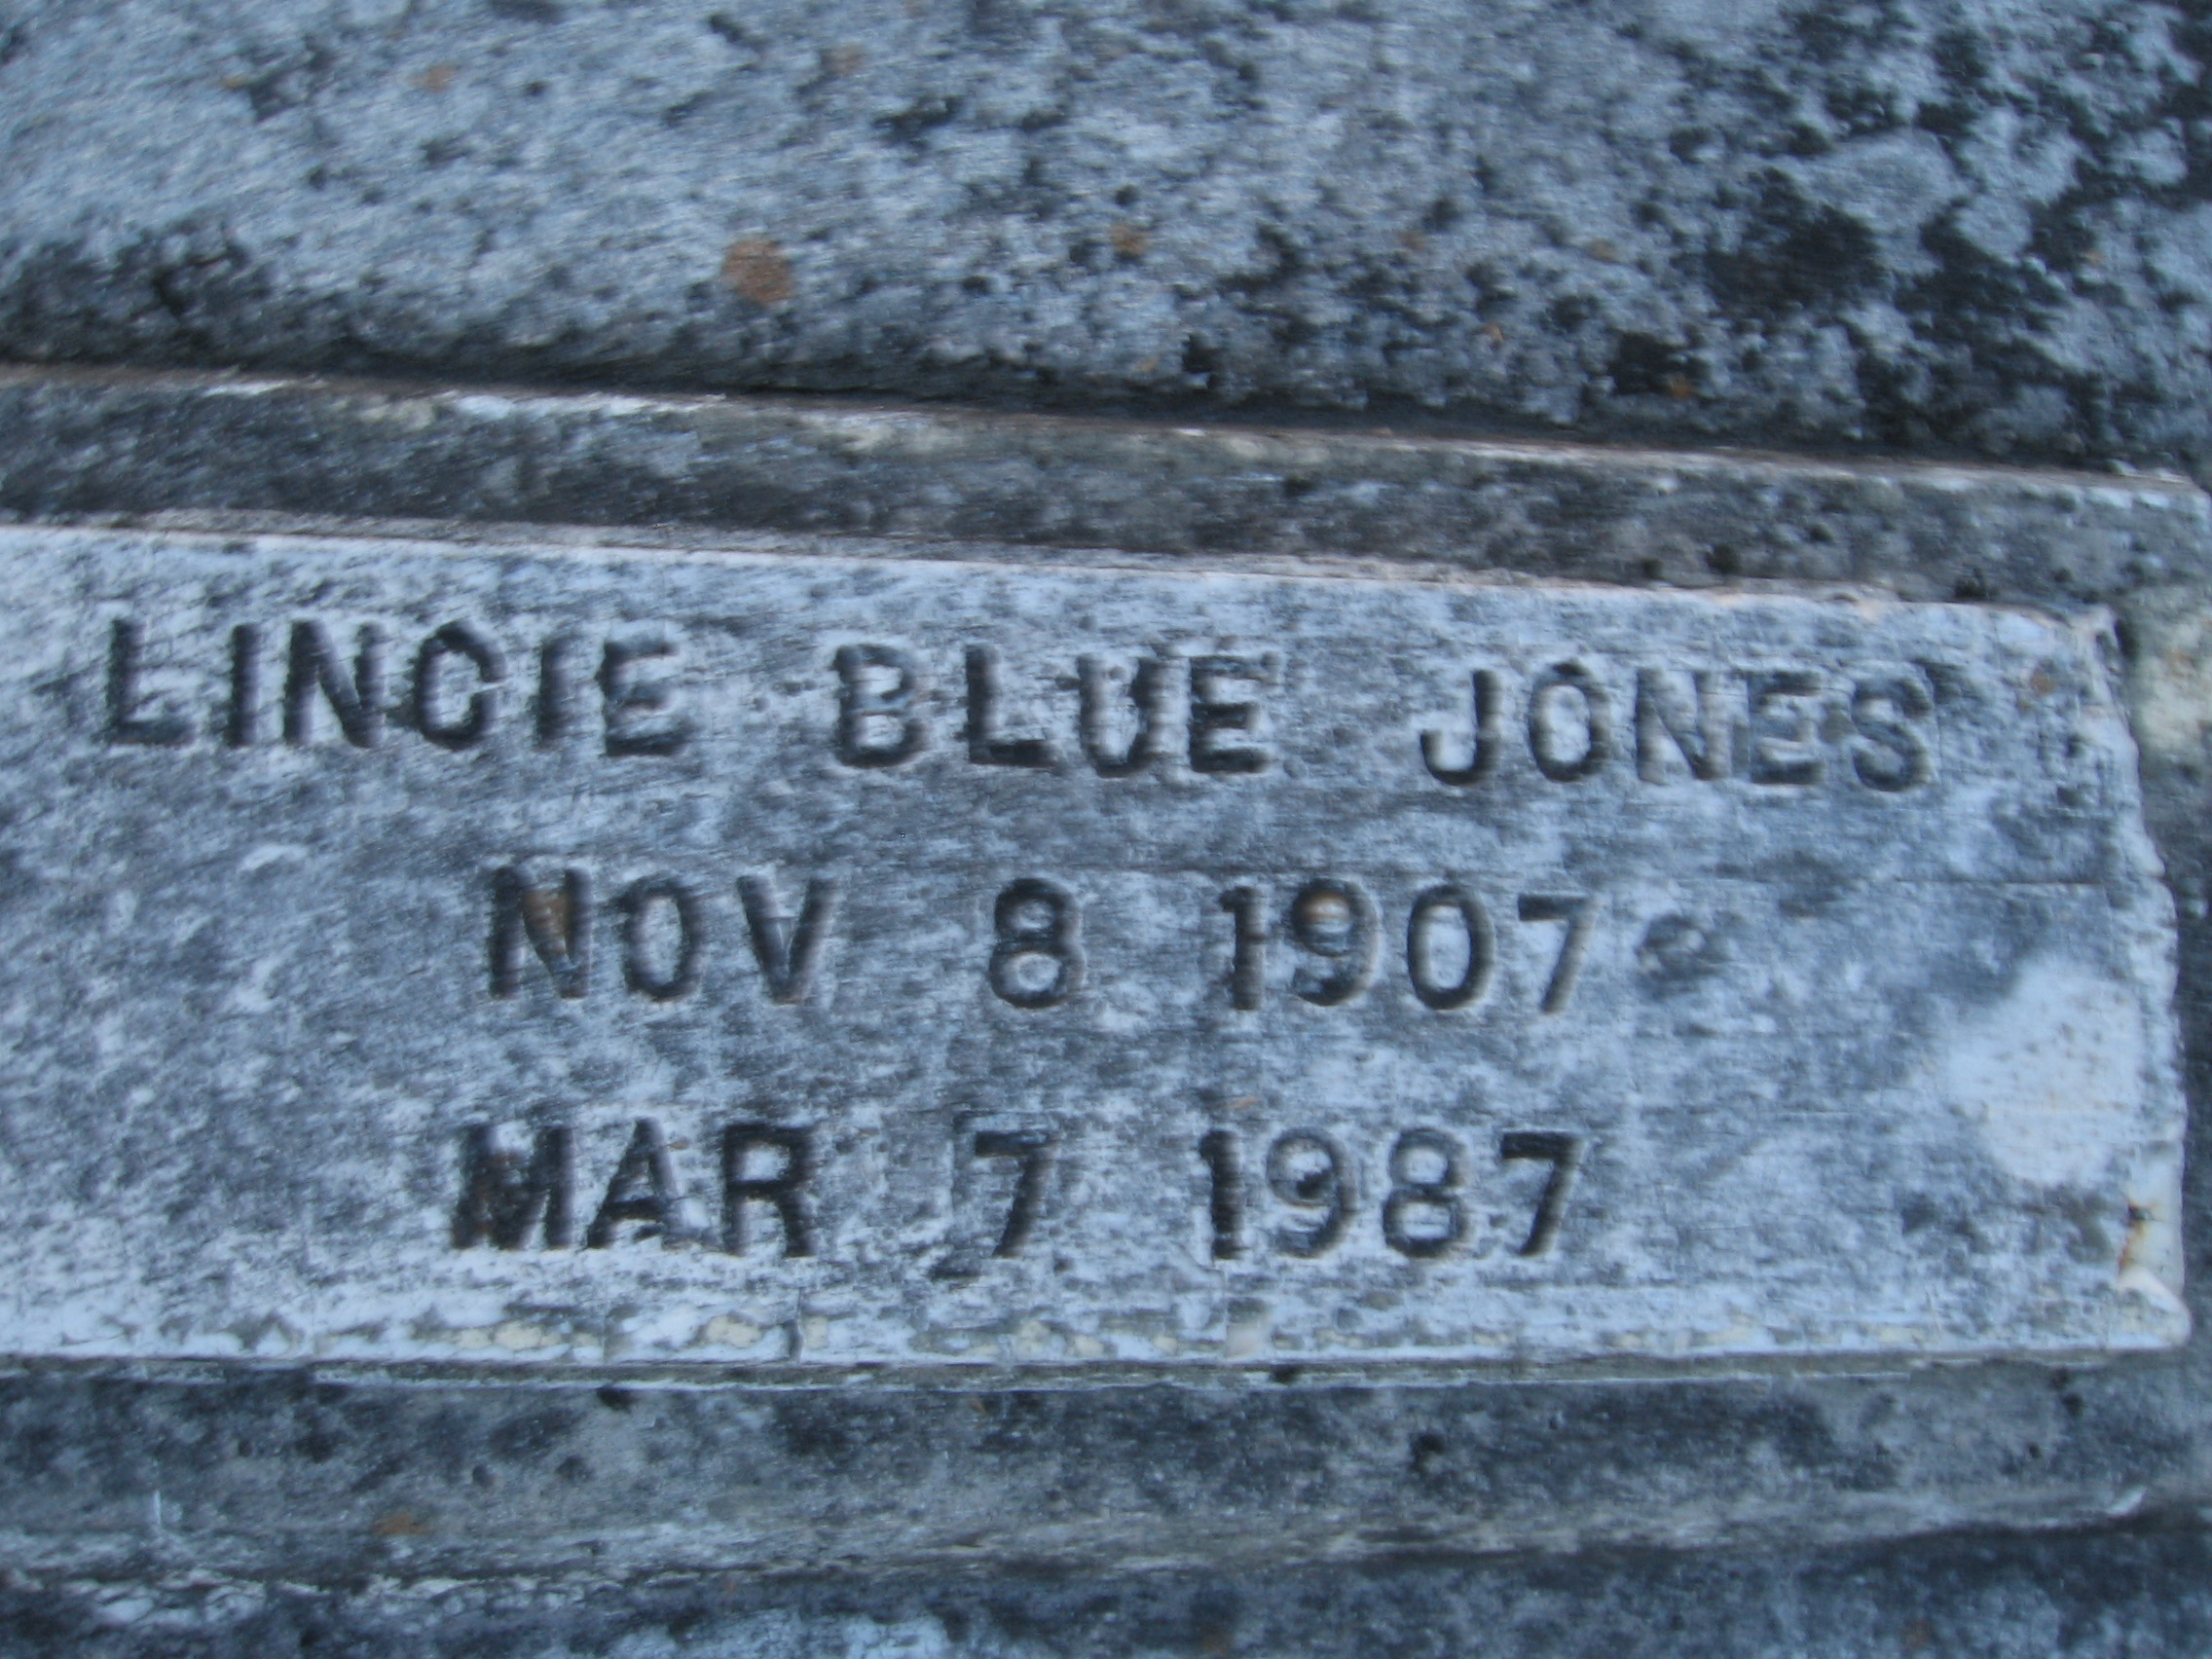 Lincie Blue Jones